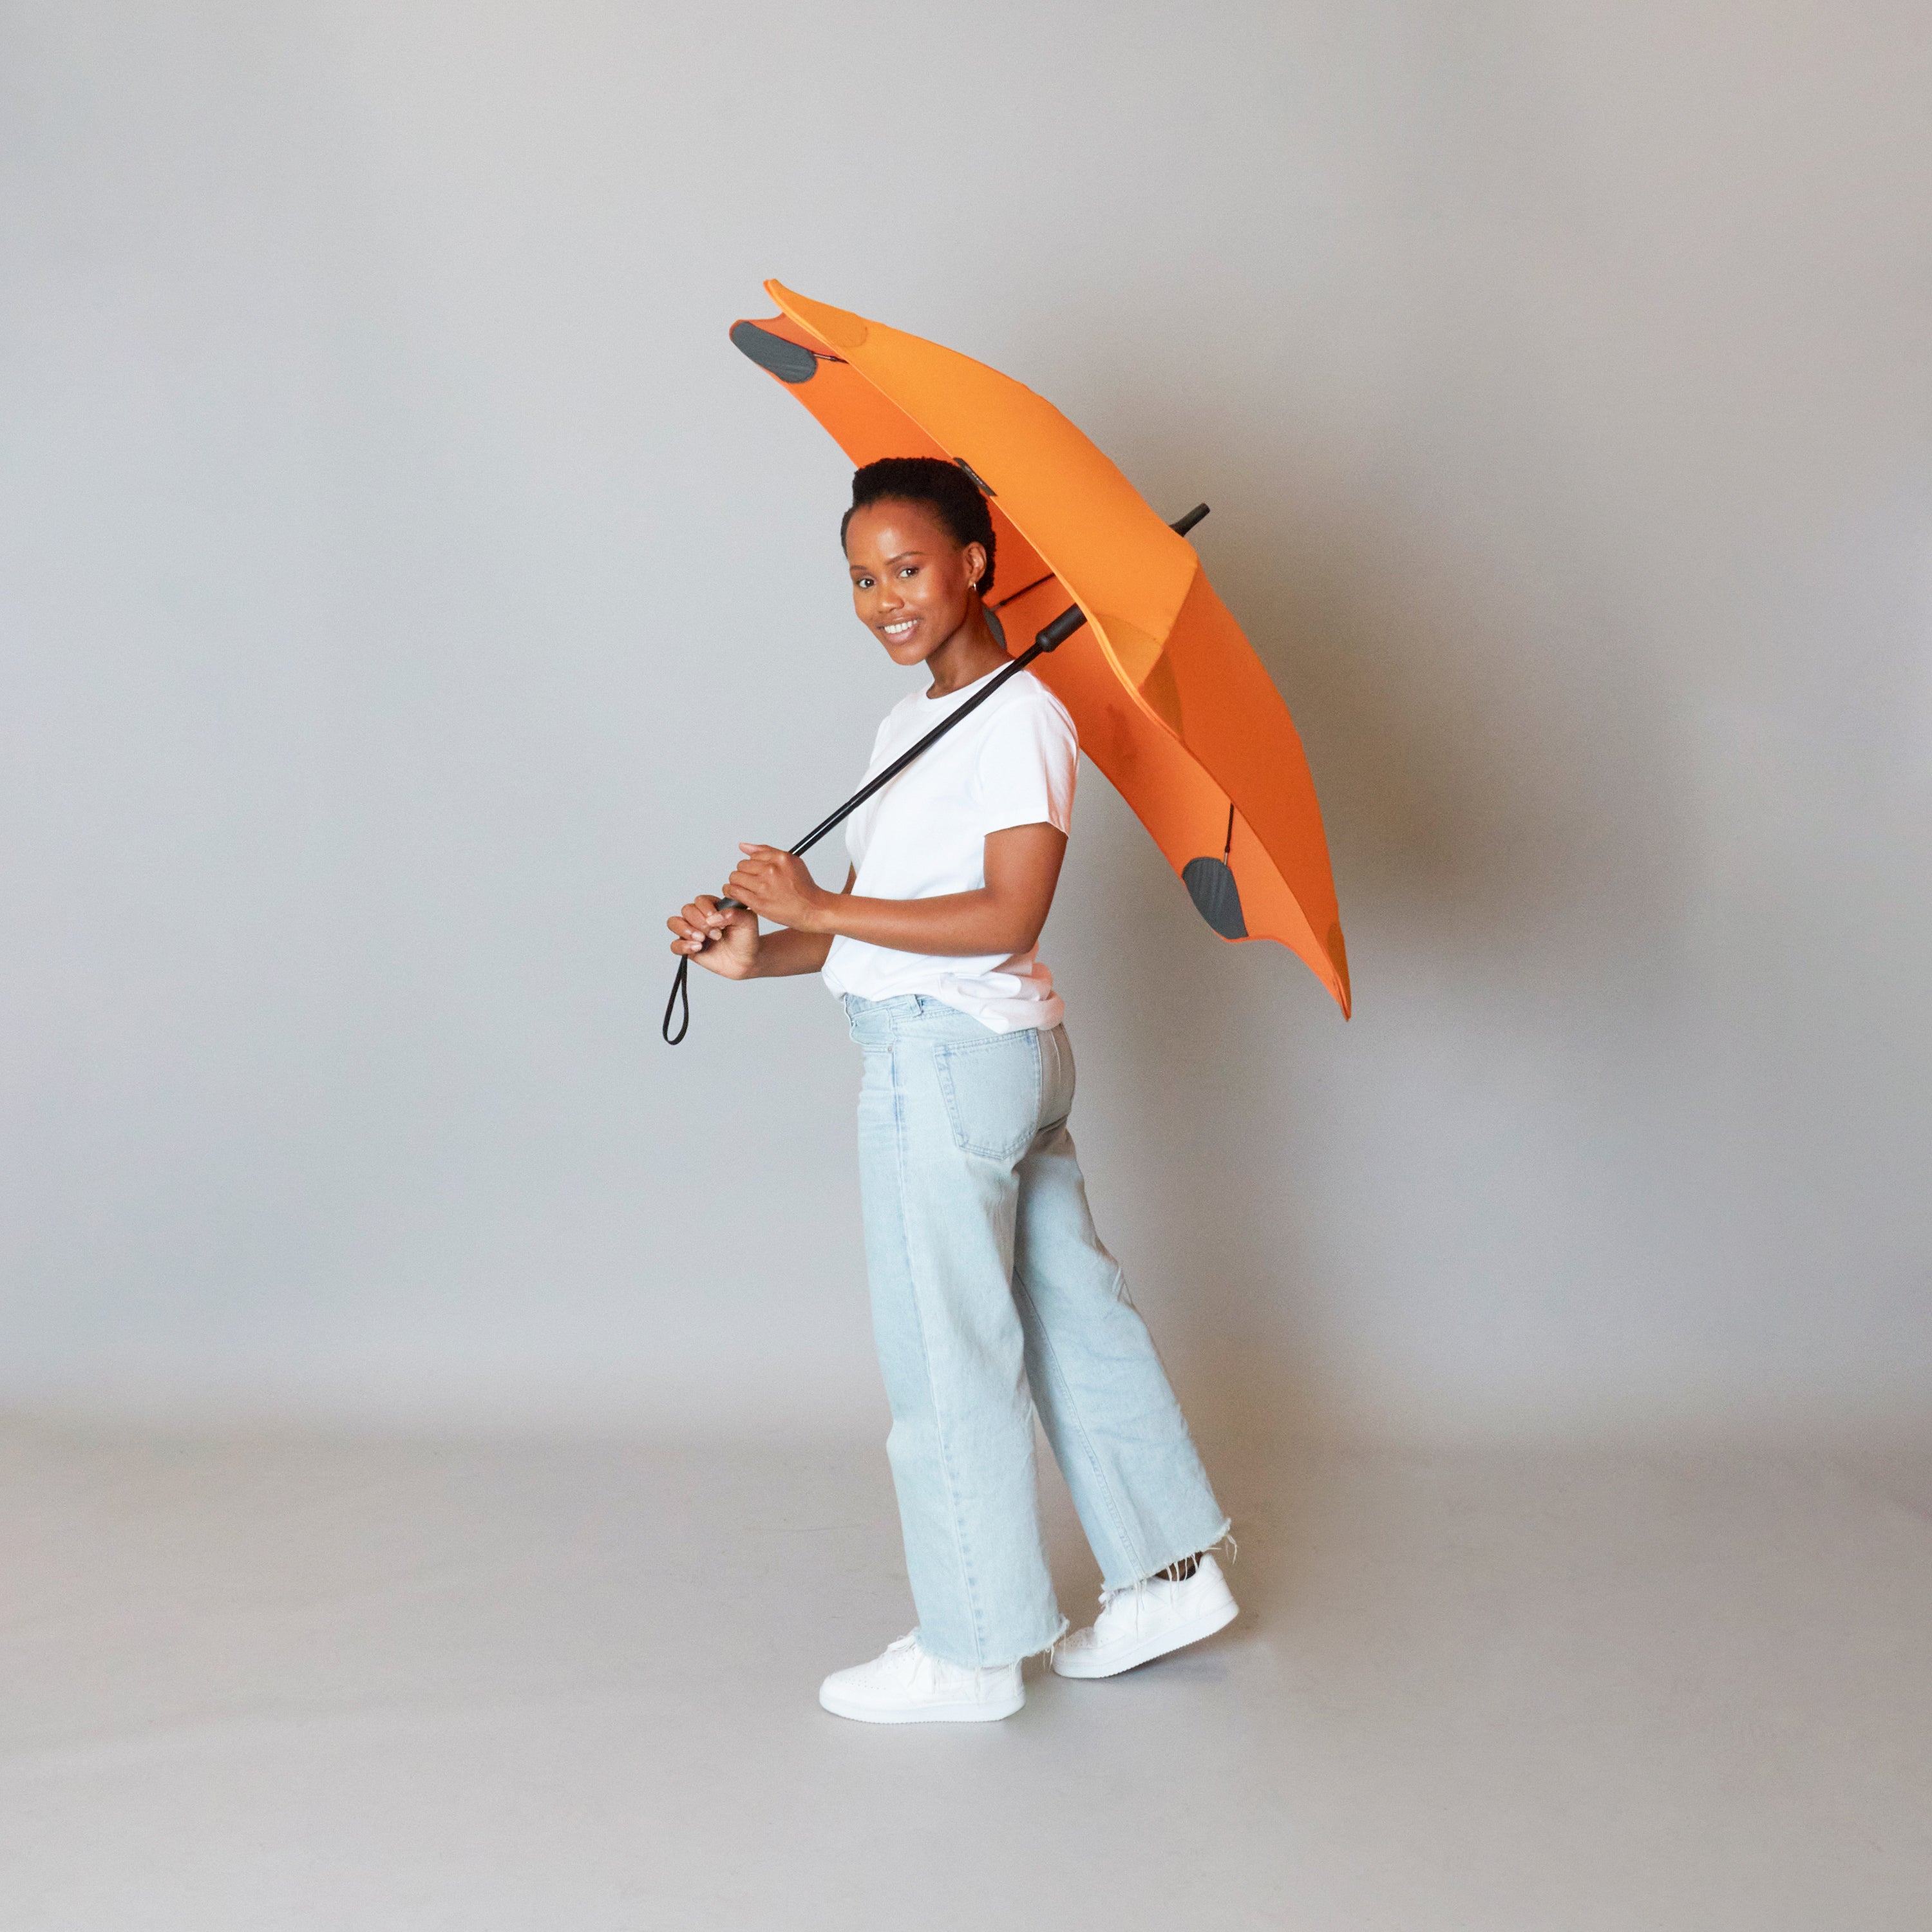 2020 Classic Orange Blunt Umbrella Model Side View